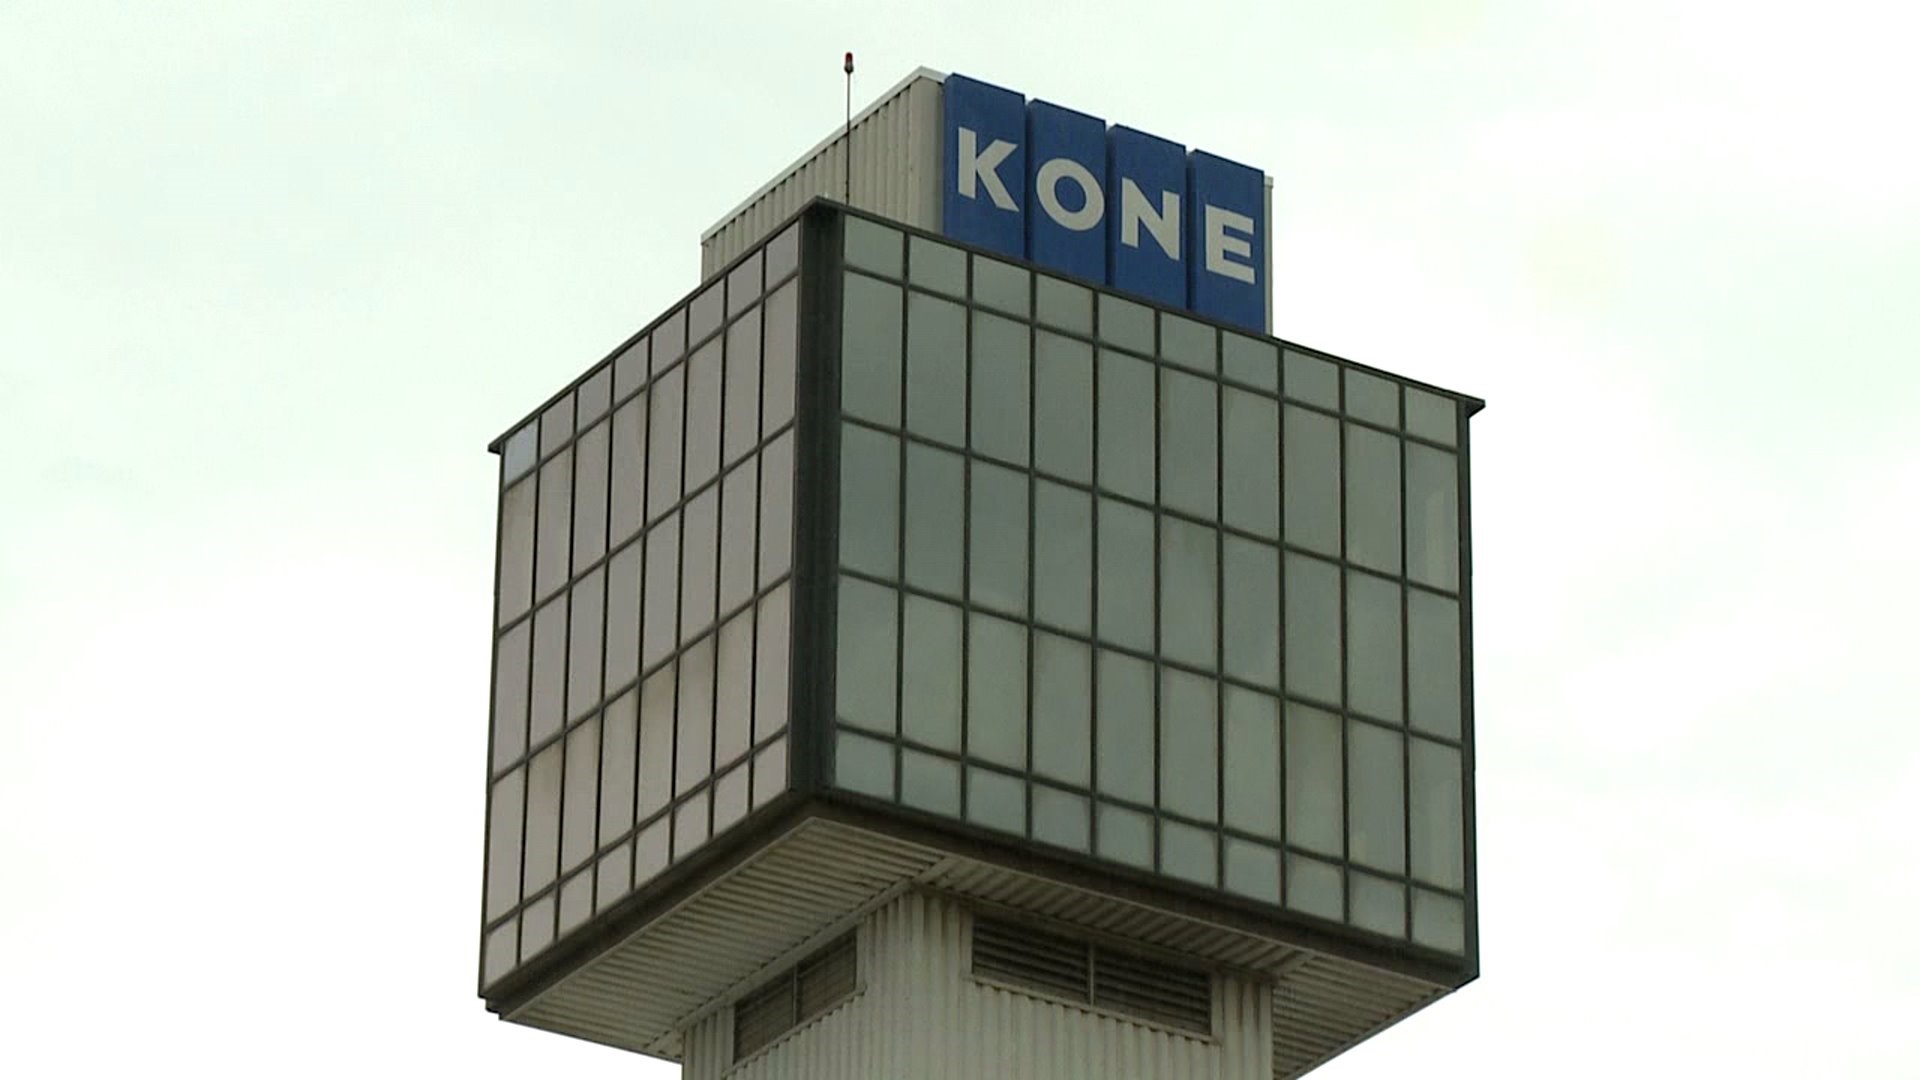 Both Kone buildings being sold